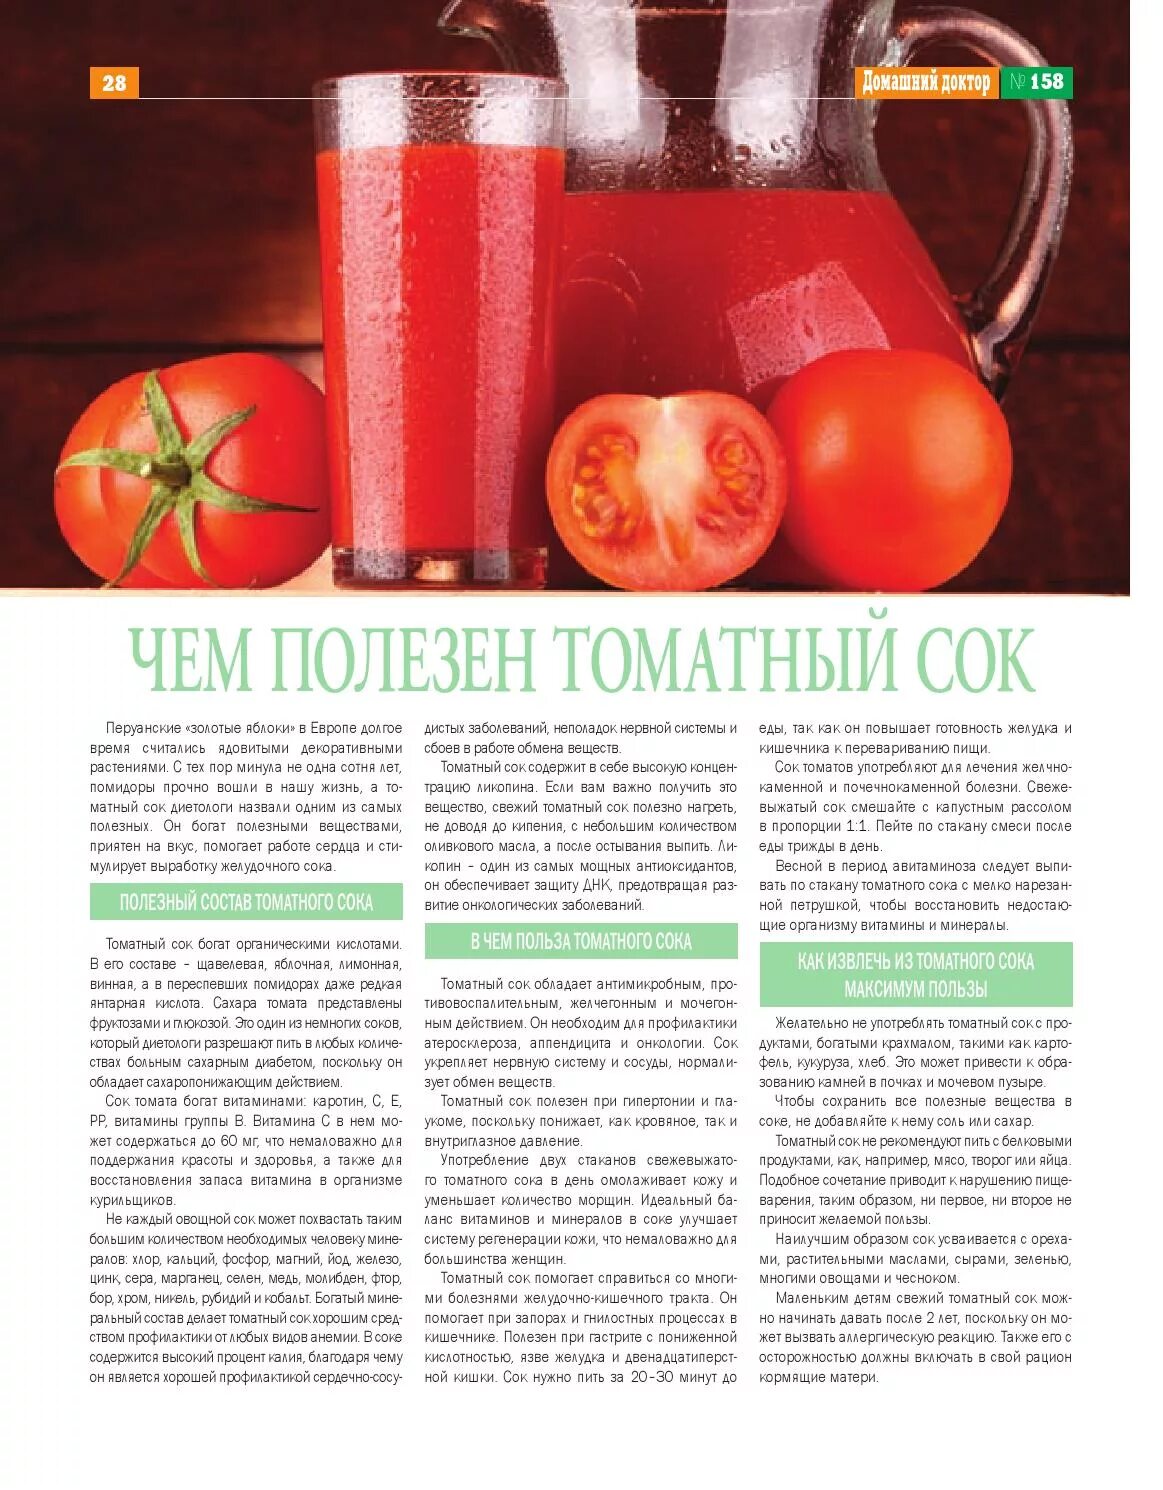 Какие соки нужно пить. Чем полезен томатный ок. Томатный сок полезен. Чем полезен томатный сок. Для чего полезен томатный сок.